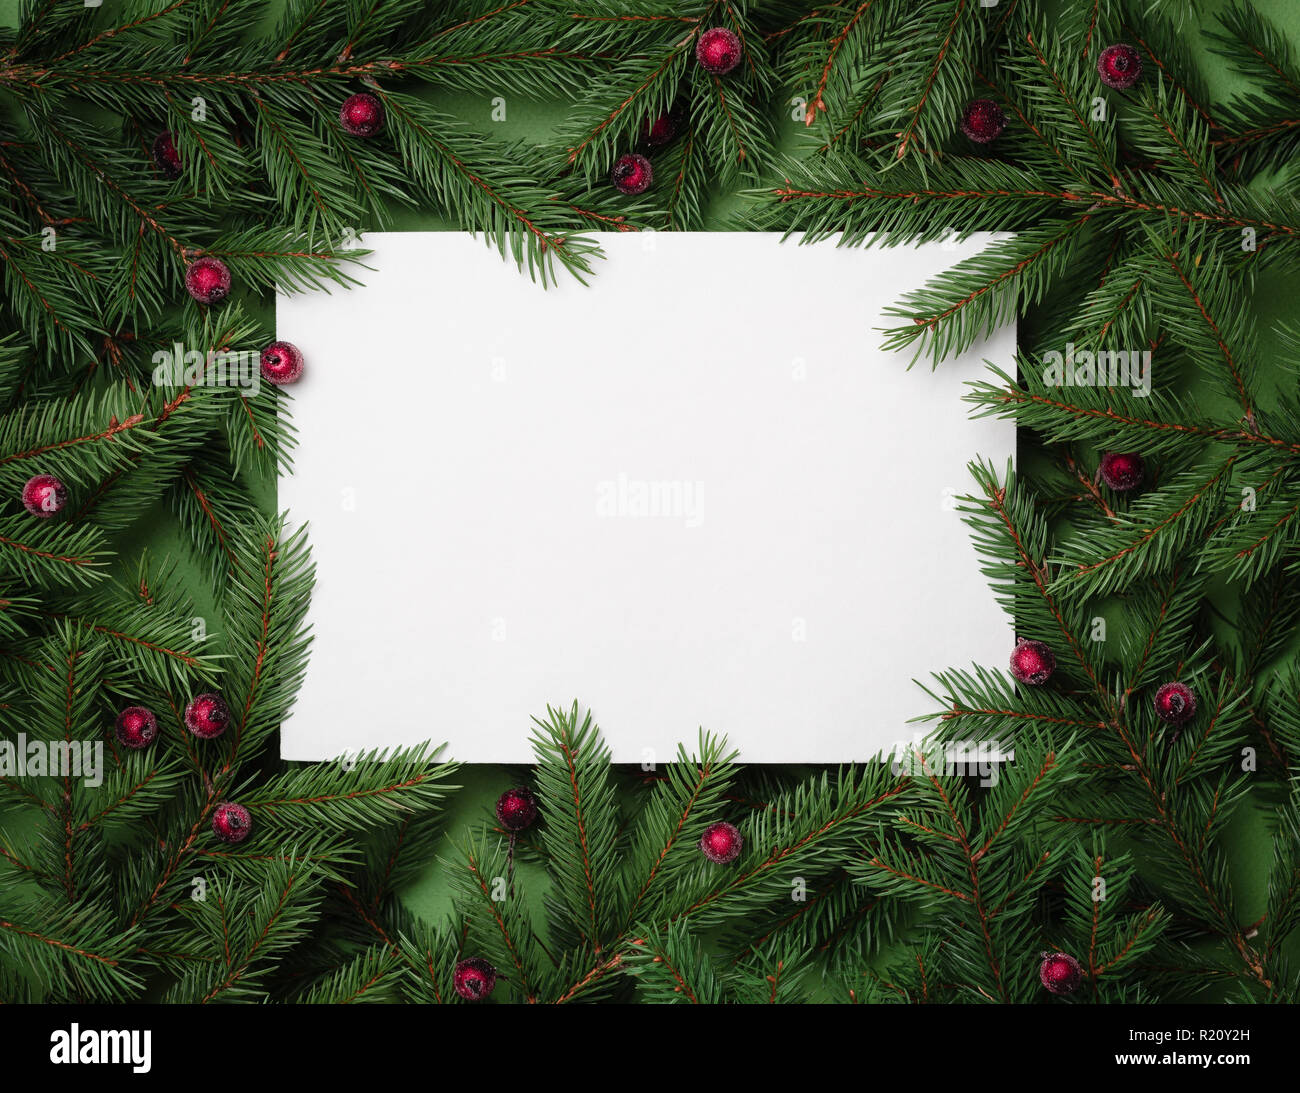 Festliche Hintergrund mit Kopie Platz für Text. Weihnachten Grenze von tannenzweigen und Stechpalme Beeren. Flach, Ansicht von oben Stockfoto